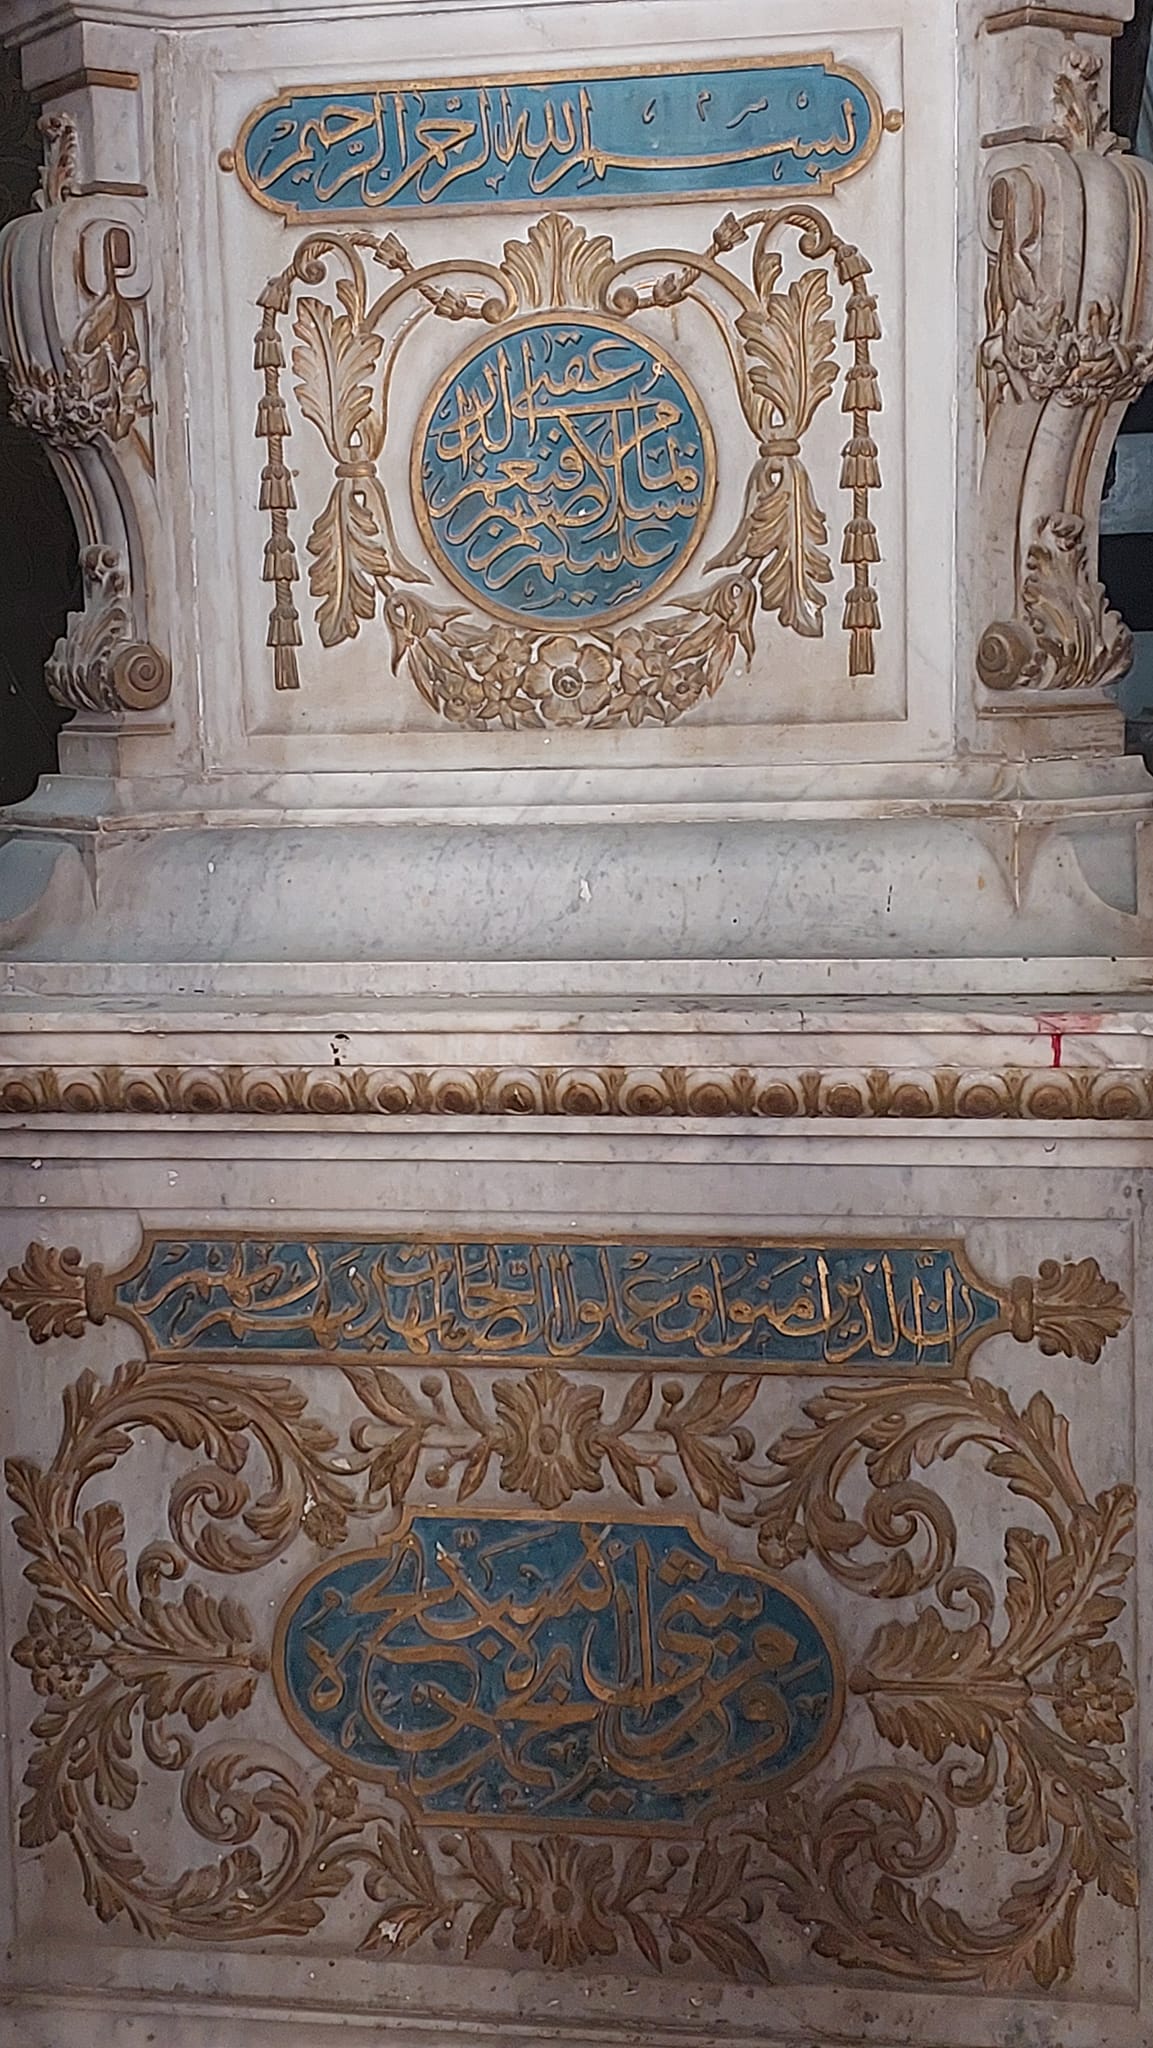 شاهد قبر احمد باشا المنشاوي مصنوع من الرخام الإيطالي